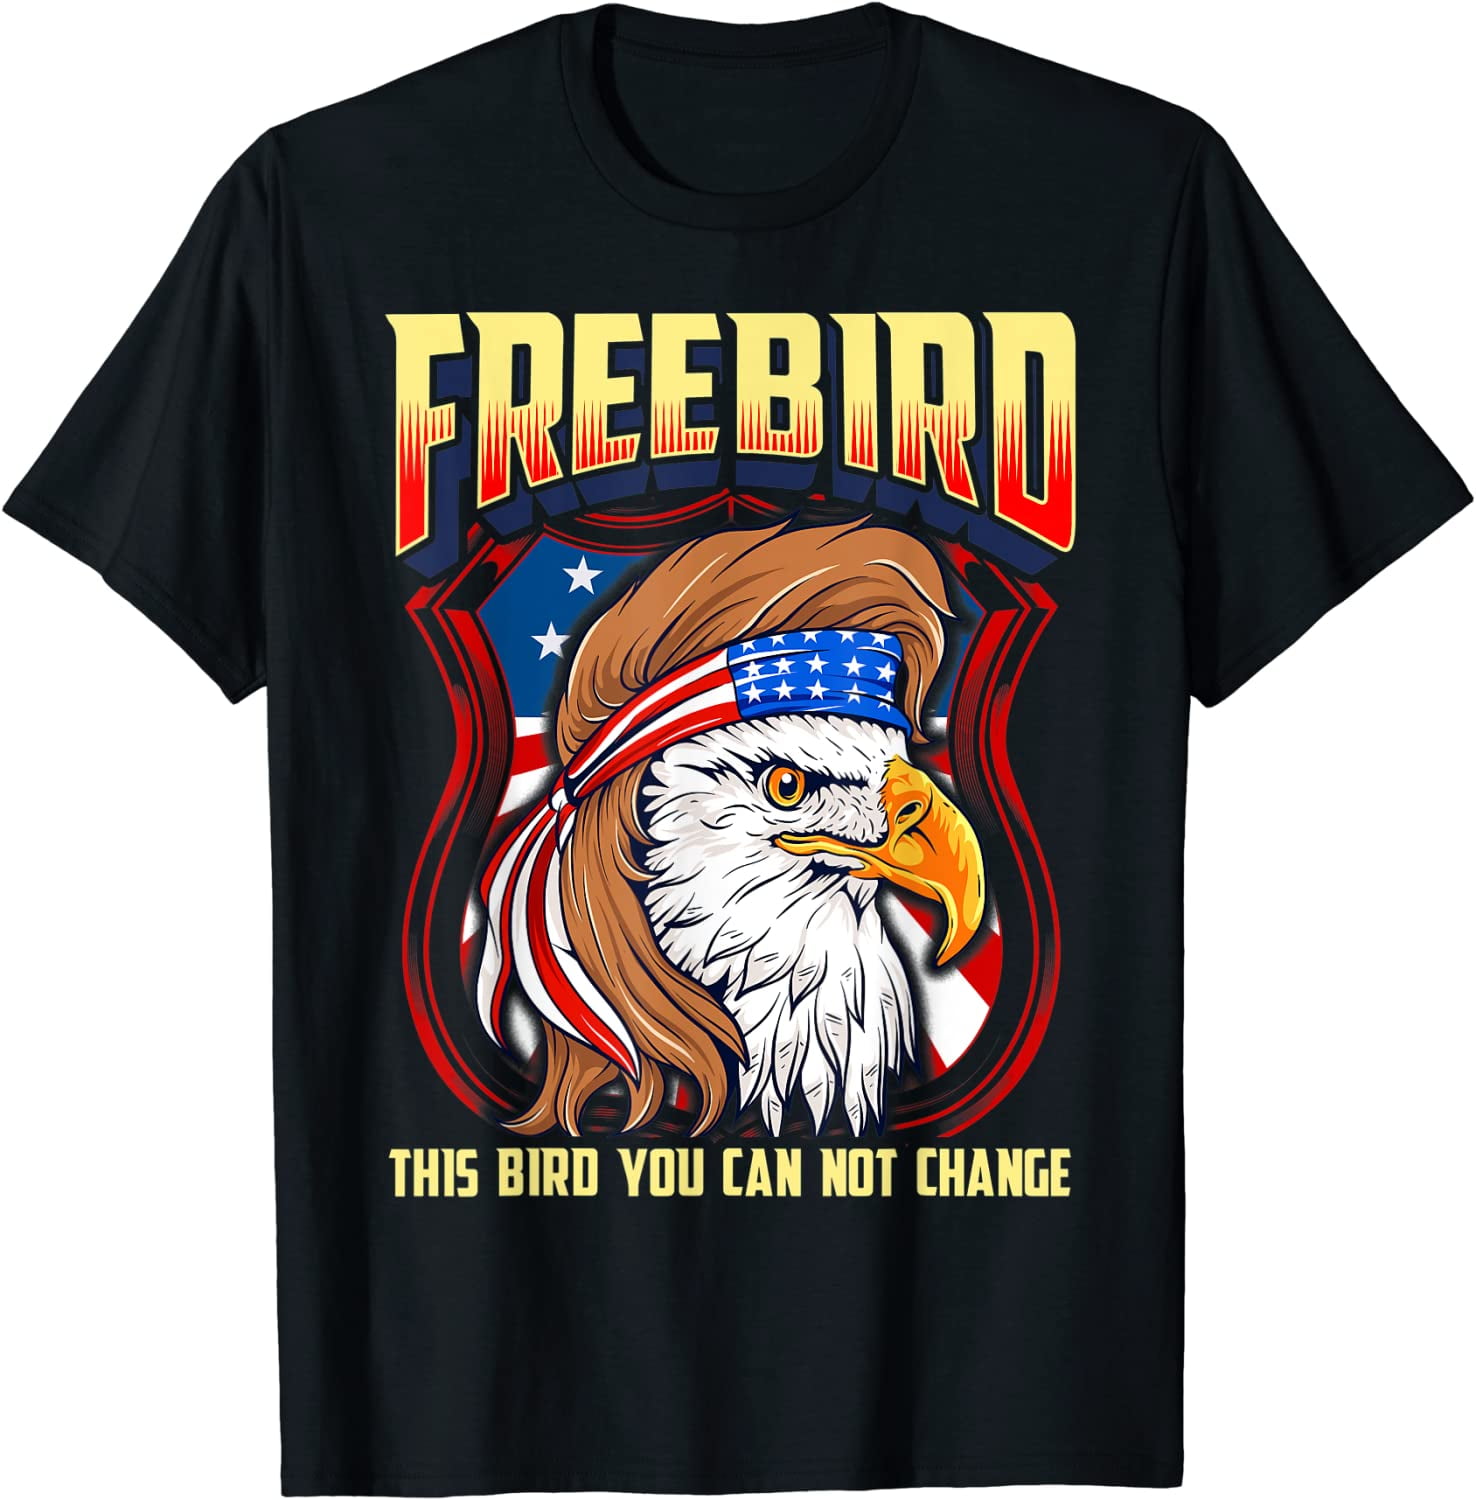 FREE BIRD (USA Eagle) T-Shirt - Walmart.com